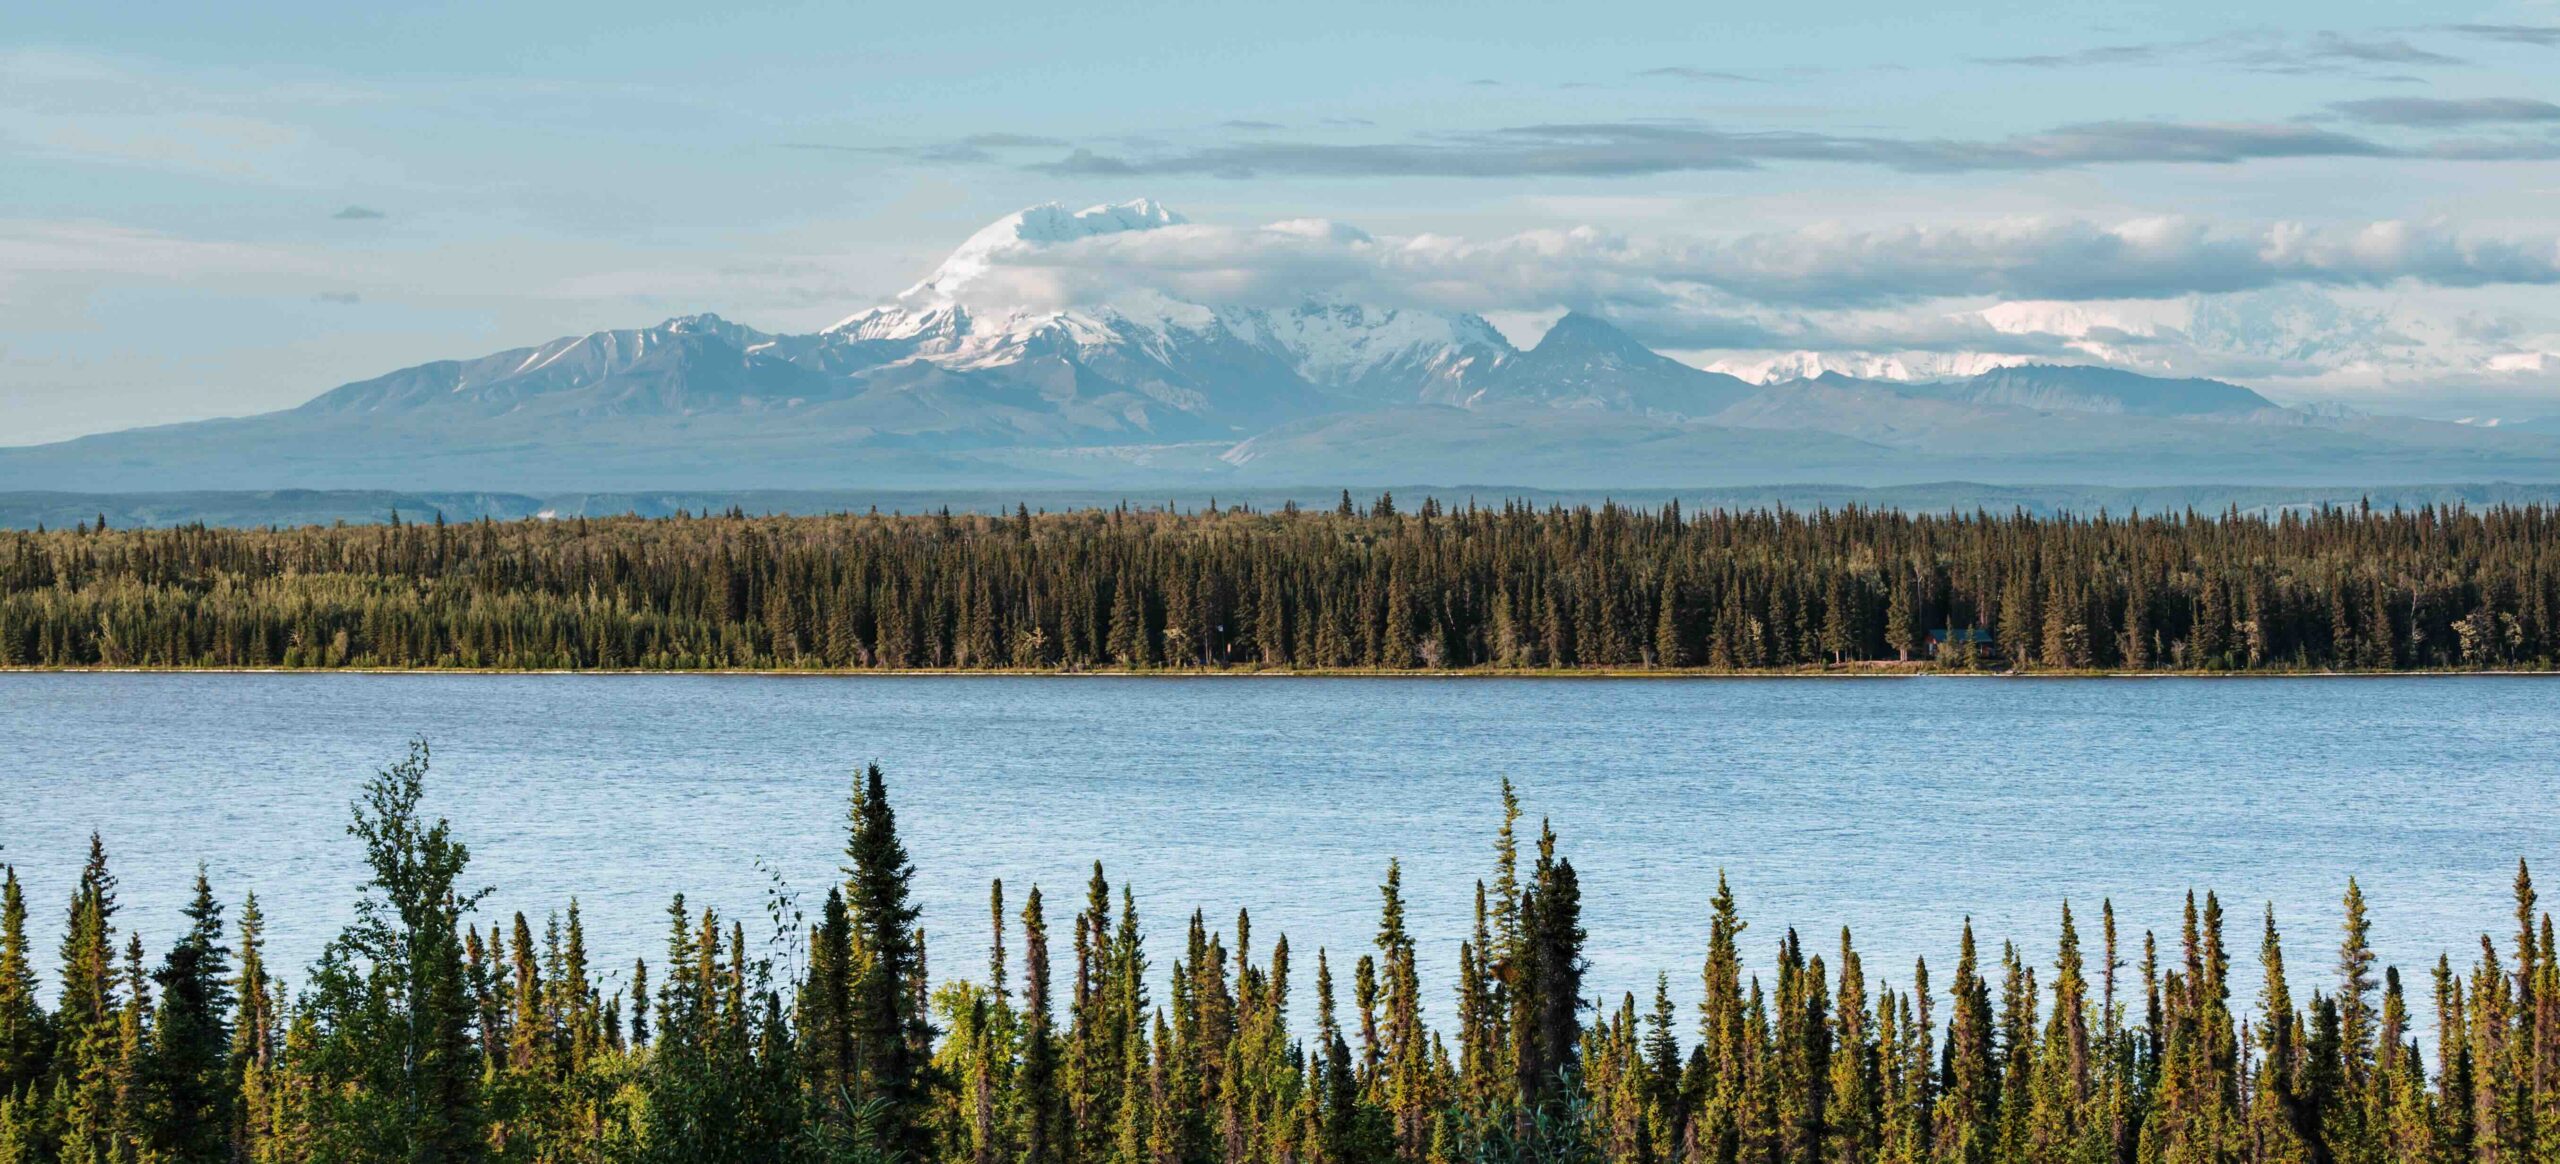 Alaskan Mountain Range - Majestic Landscape by Kwaan Bear